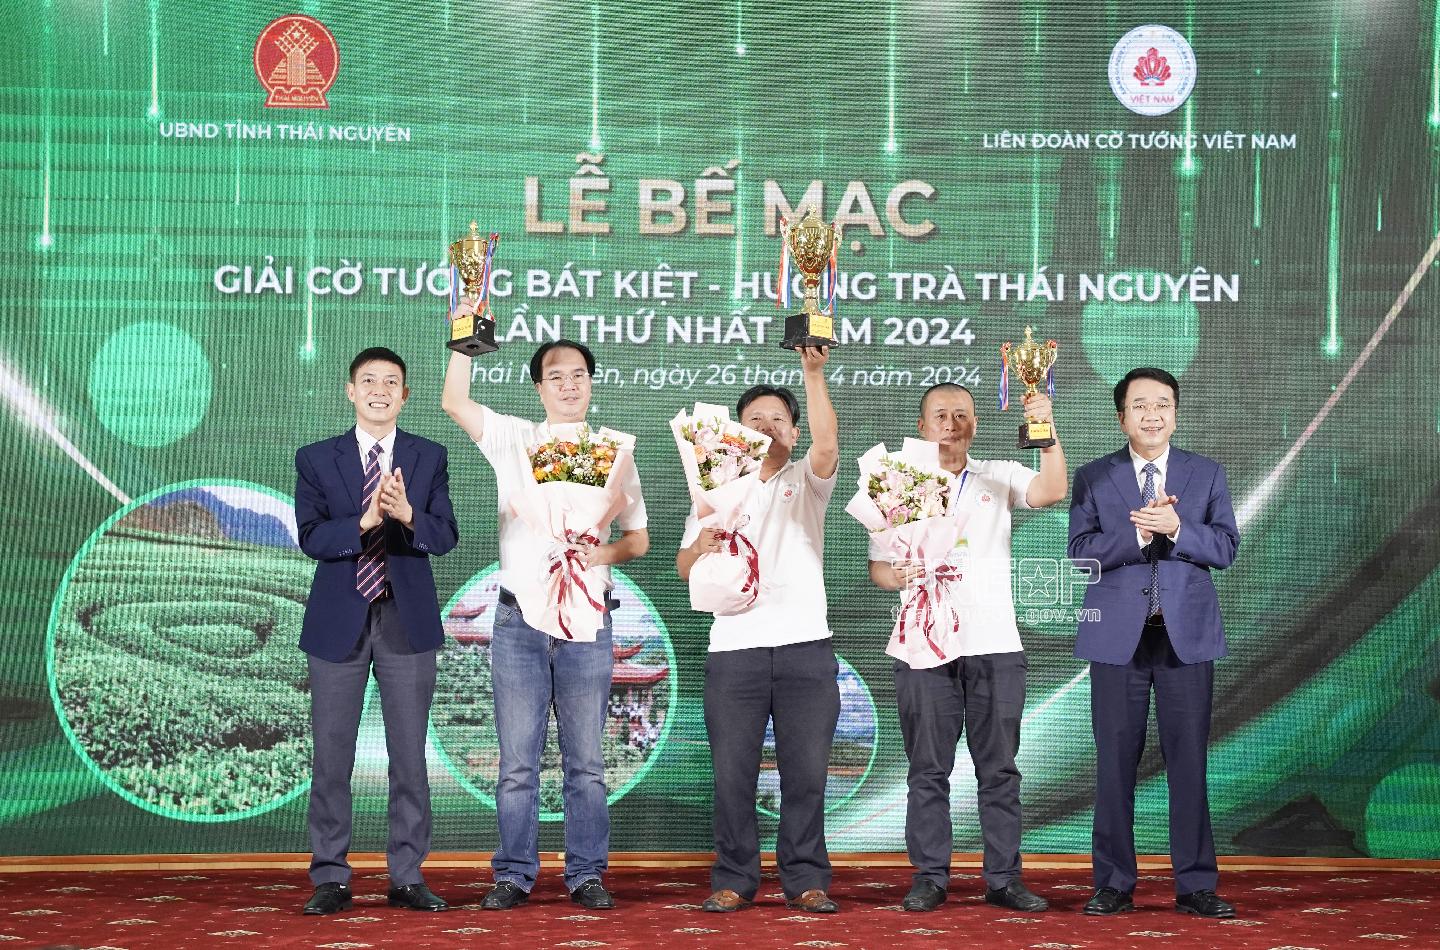 Bế mạc Giải cờ tướng Bát kiệt - Hương trà Thái Nguyên lần thứ nhất năm 2024